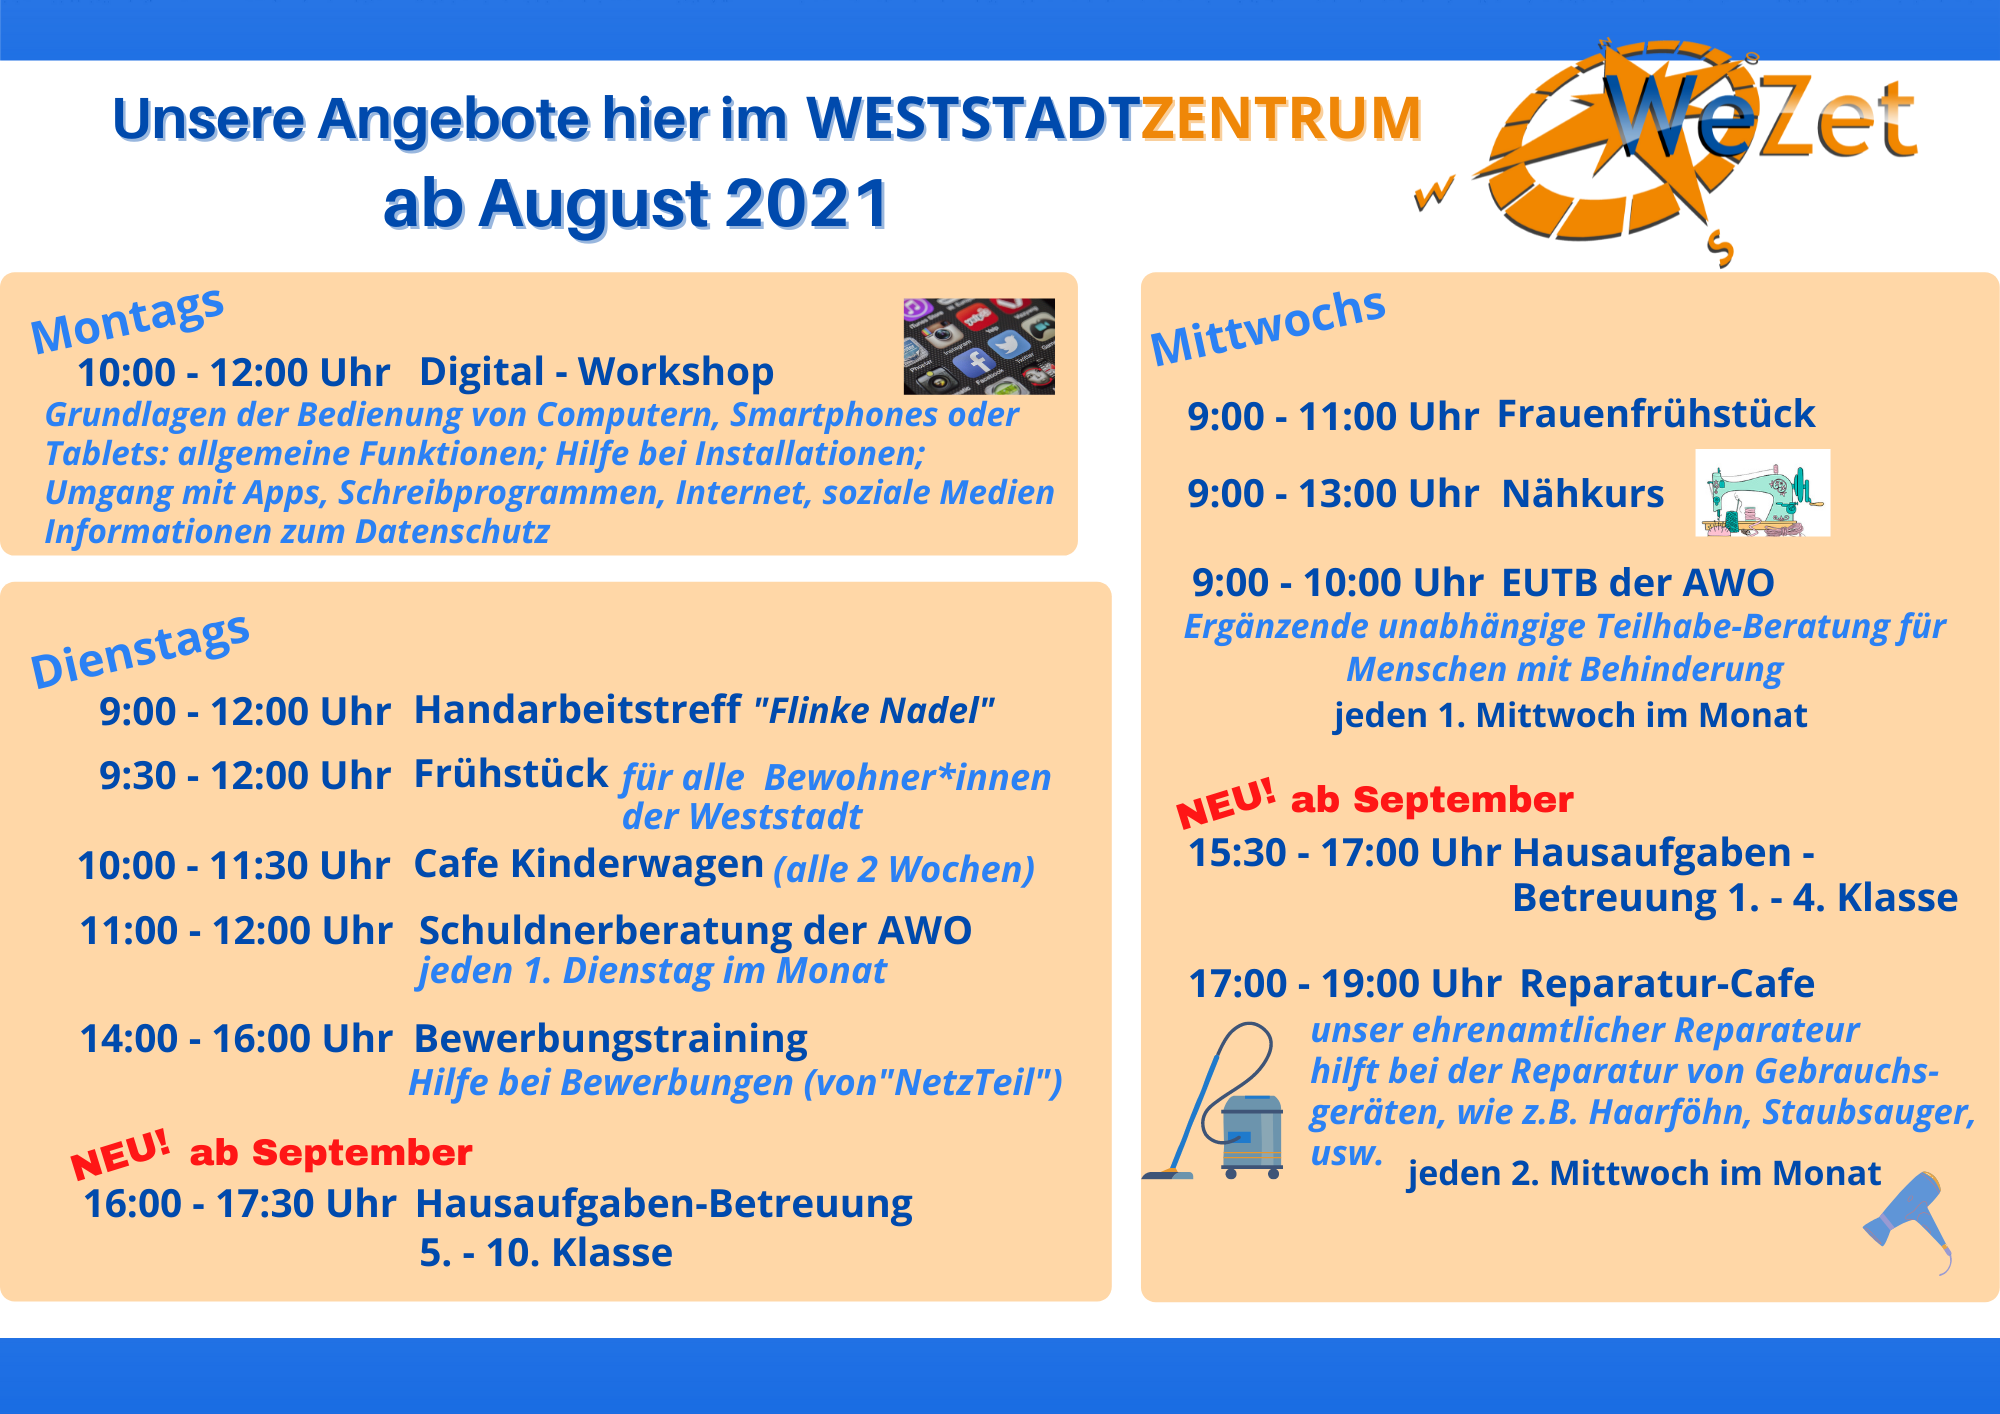 https://www.weststadtzentrum.de/wp-content/uploads/2021/08/1.png